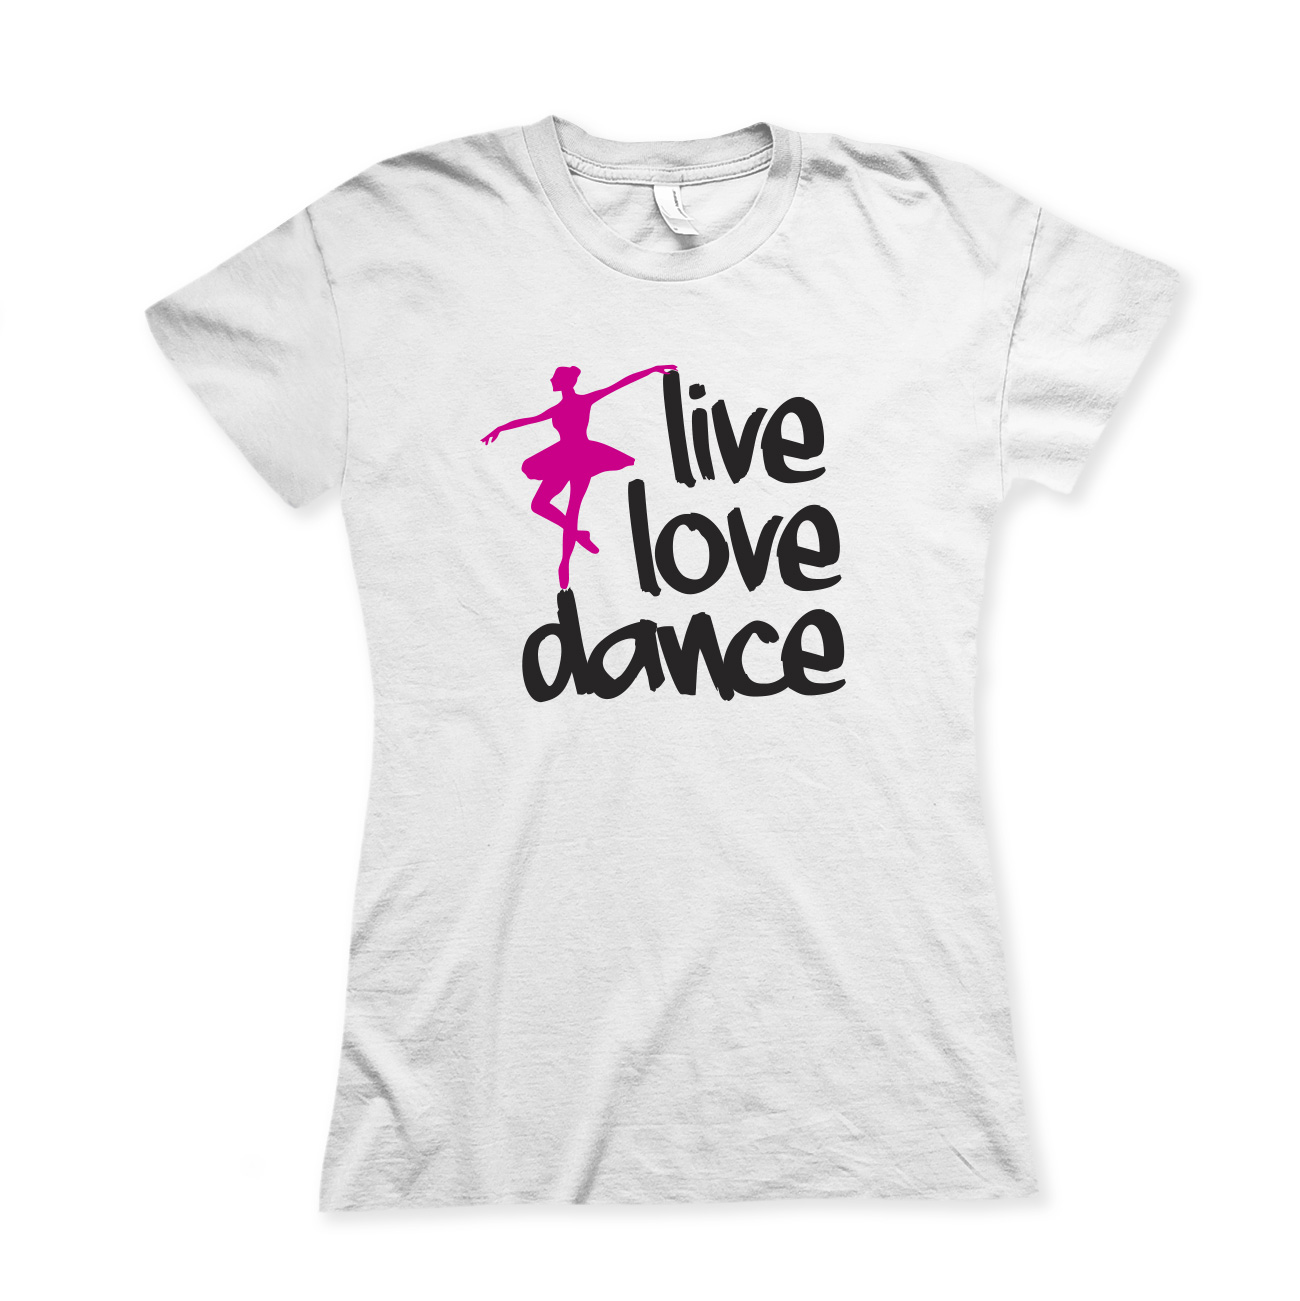 Live, love, dance